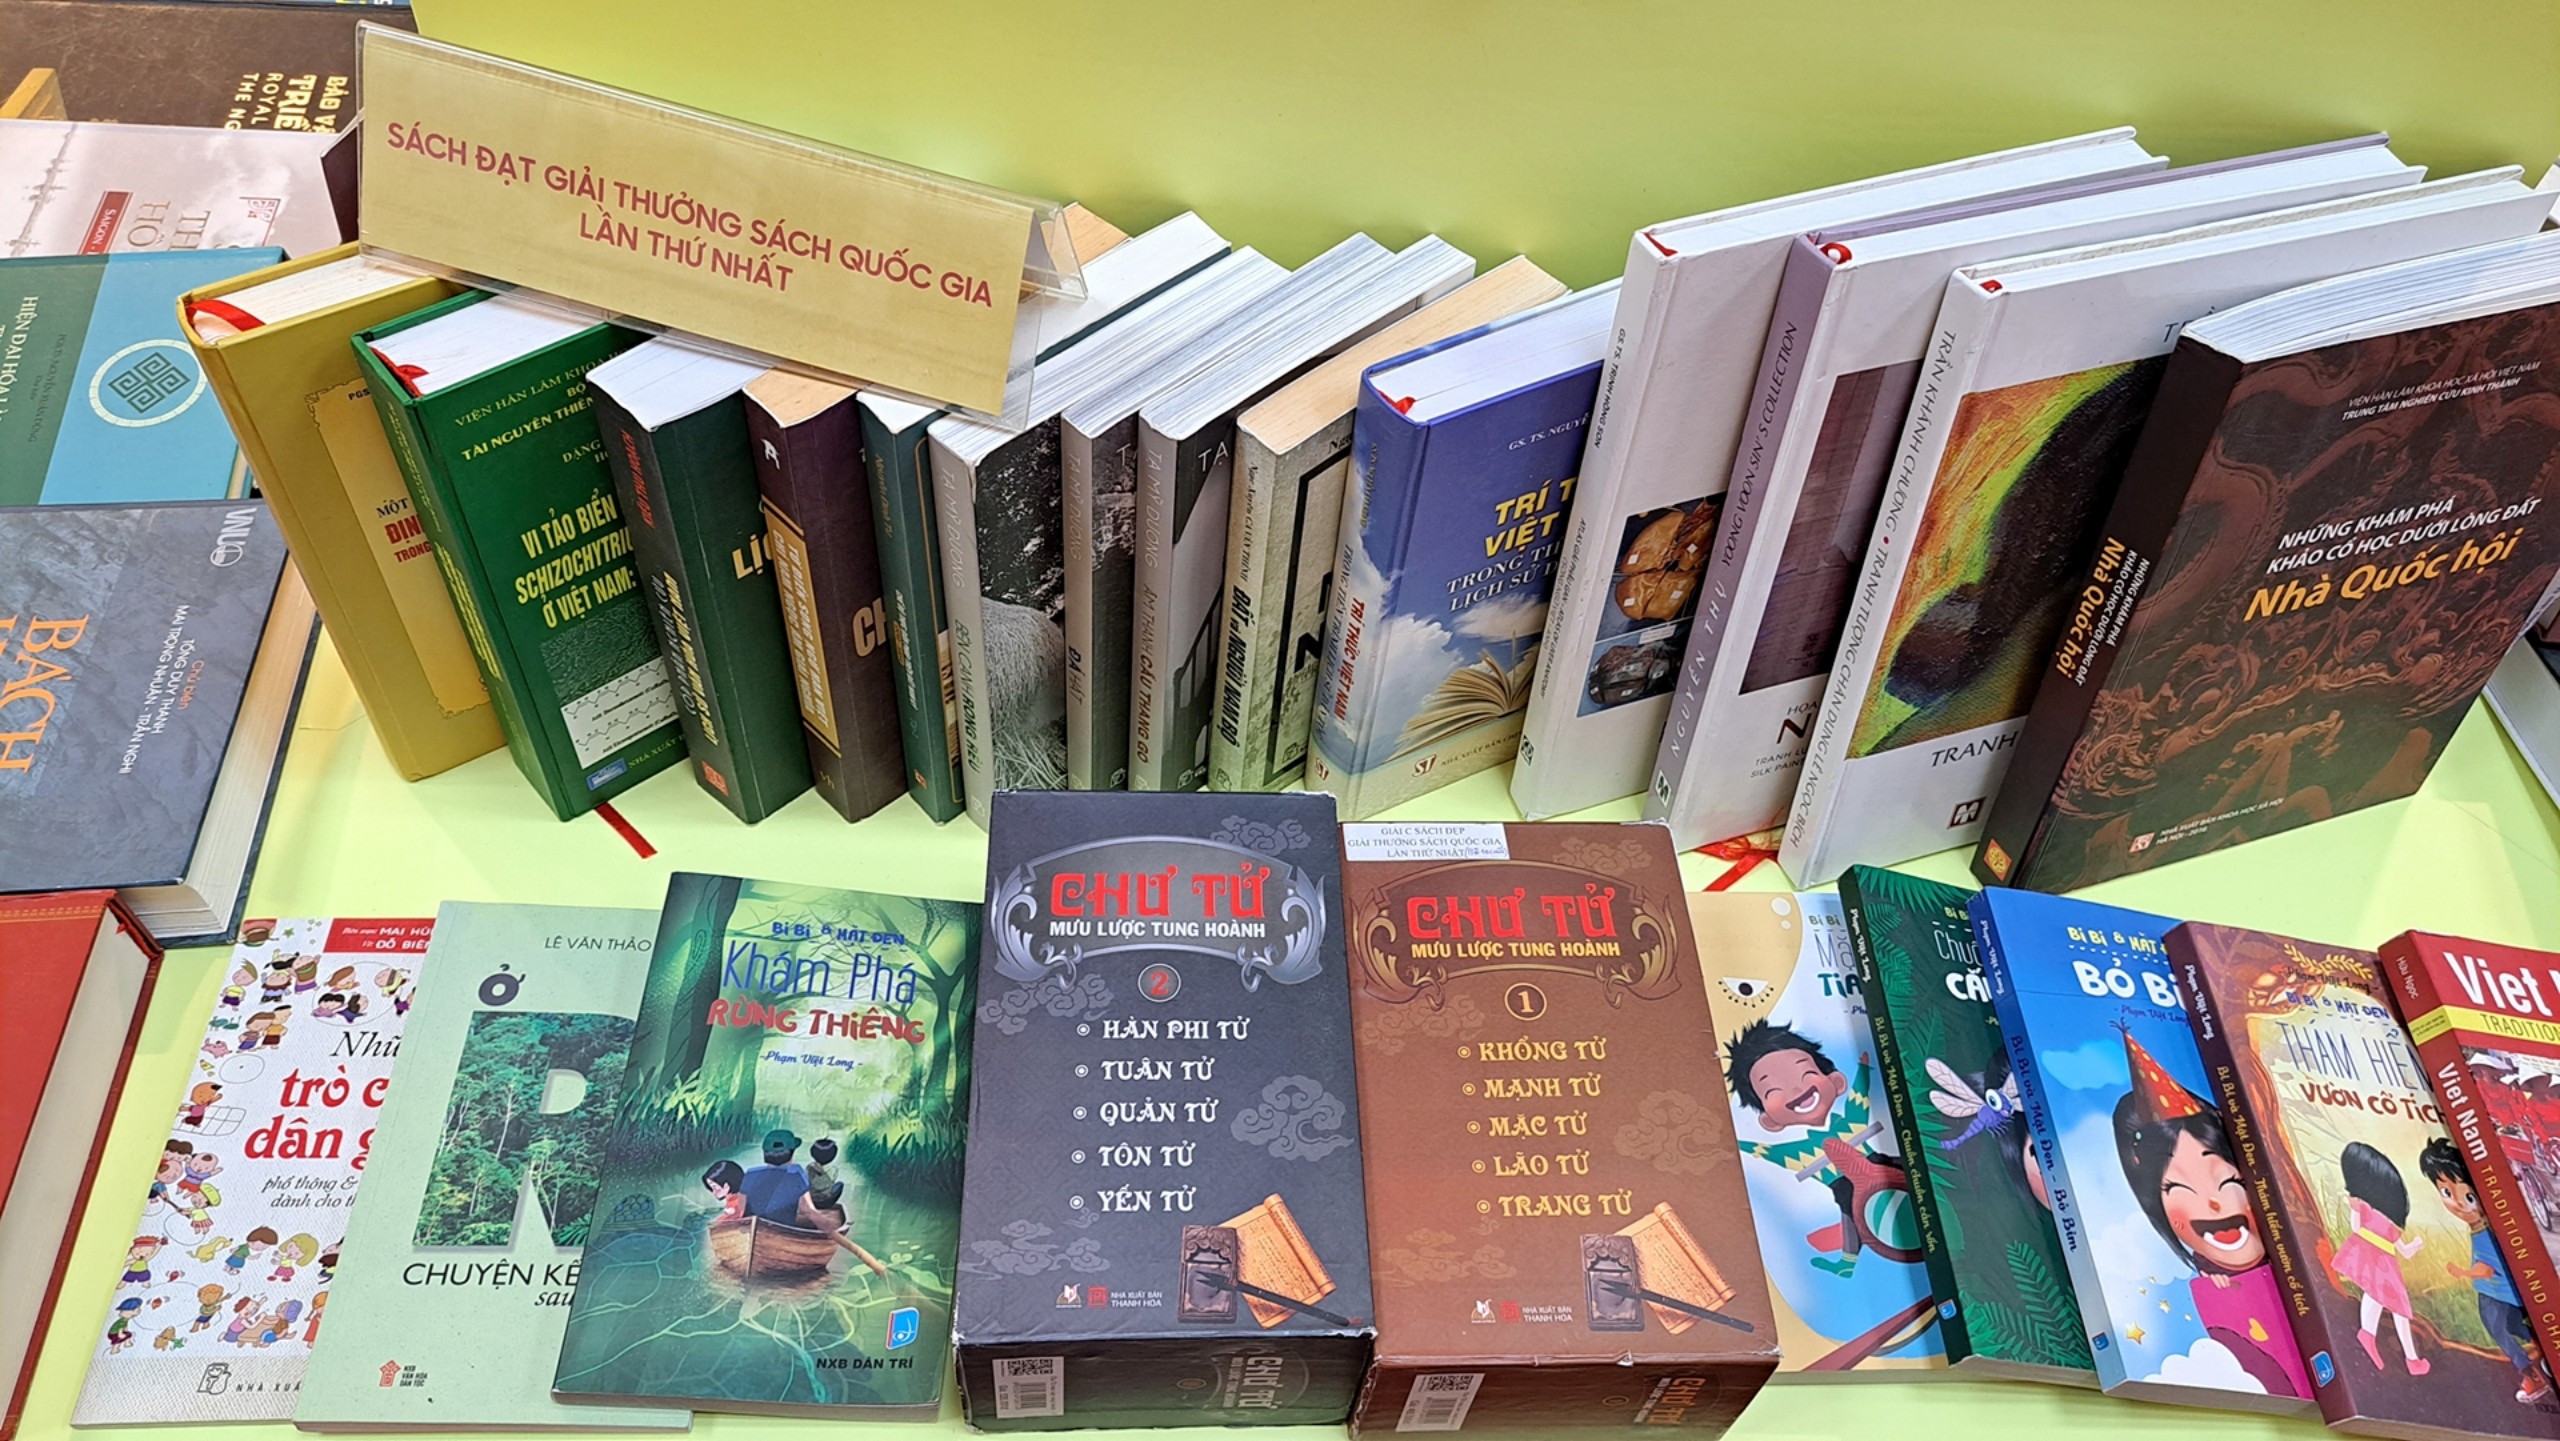 Trưng bày 2.500 cuốn sách, tư liệu, hiện vật nhân dịp Kỷ niệm 70 năm ngày truyền thống ngành Xuất bản Việt Nam - 14